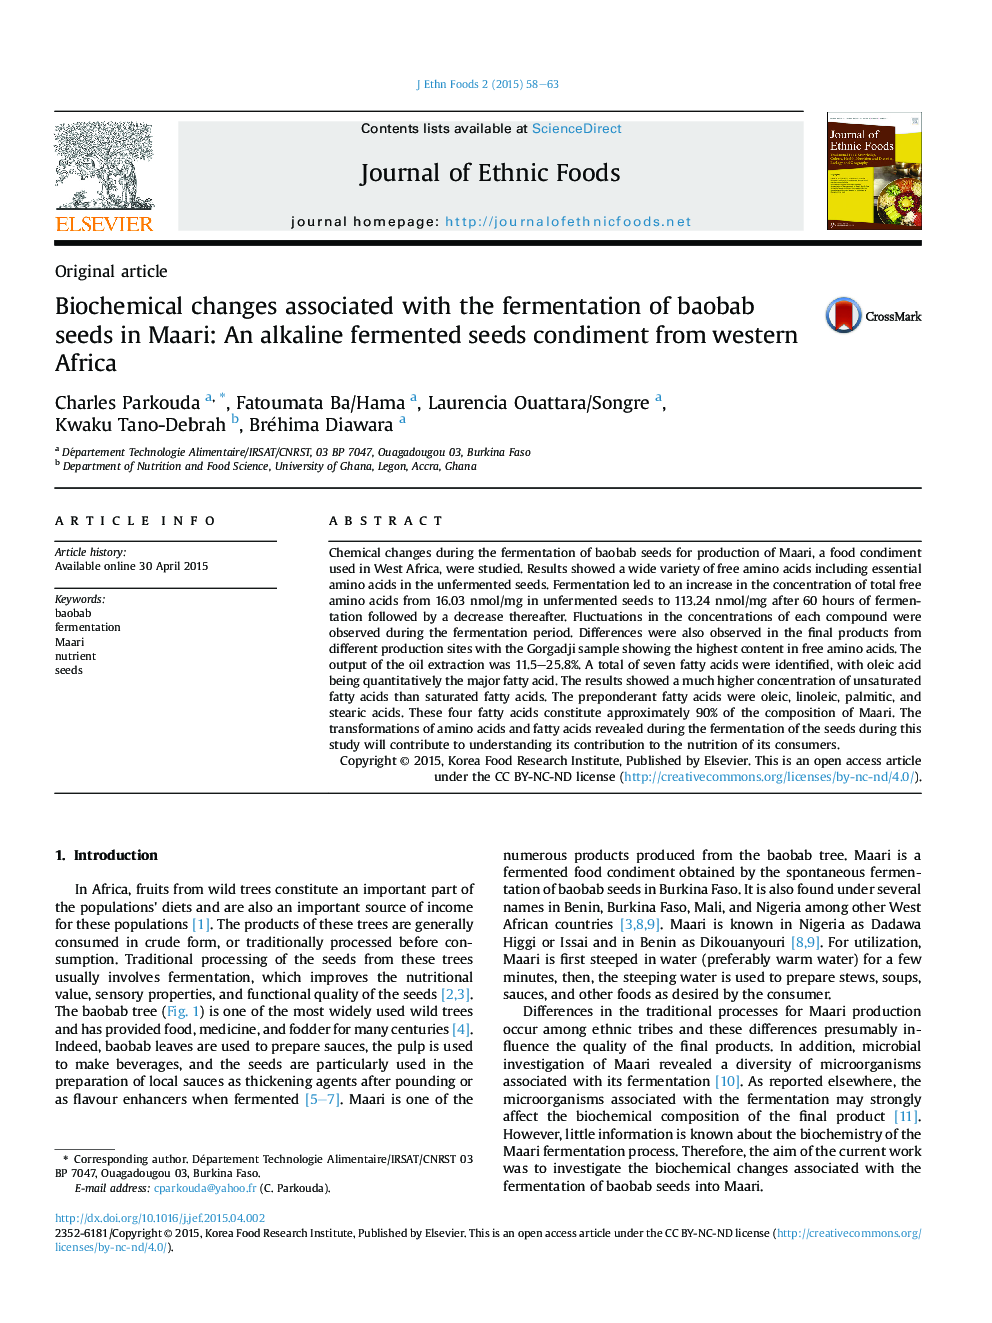 تغییرات بیوشیمیایی مرتبط با تخمیر دانه های بابااب در ماری: تهیه بذرهای قلیایی تخمیر شده از غرب آفریقا 